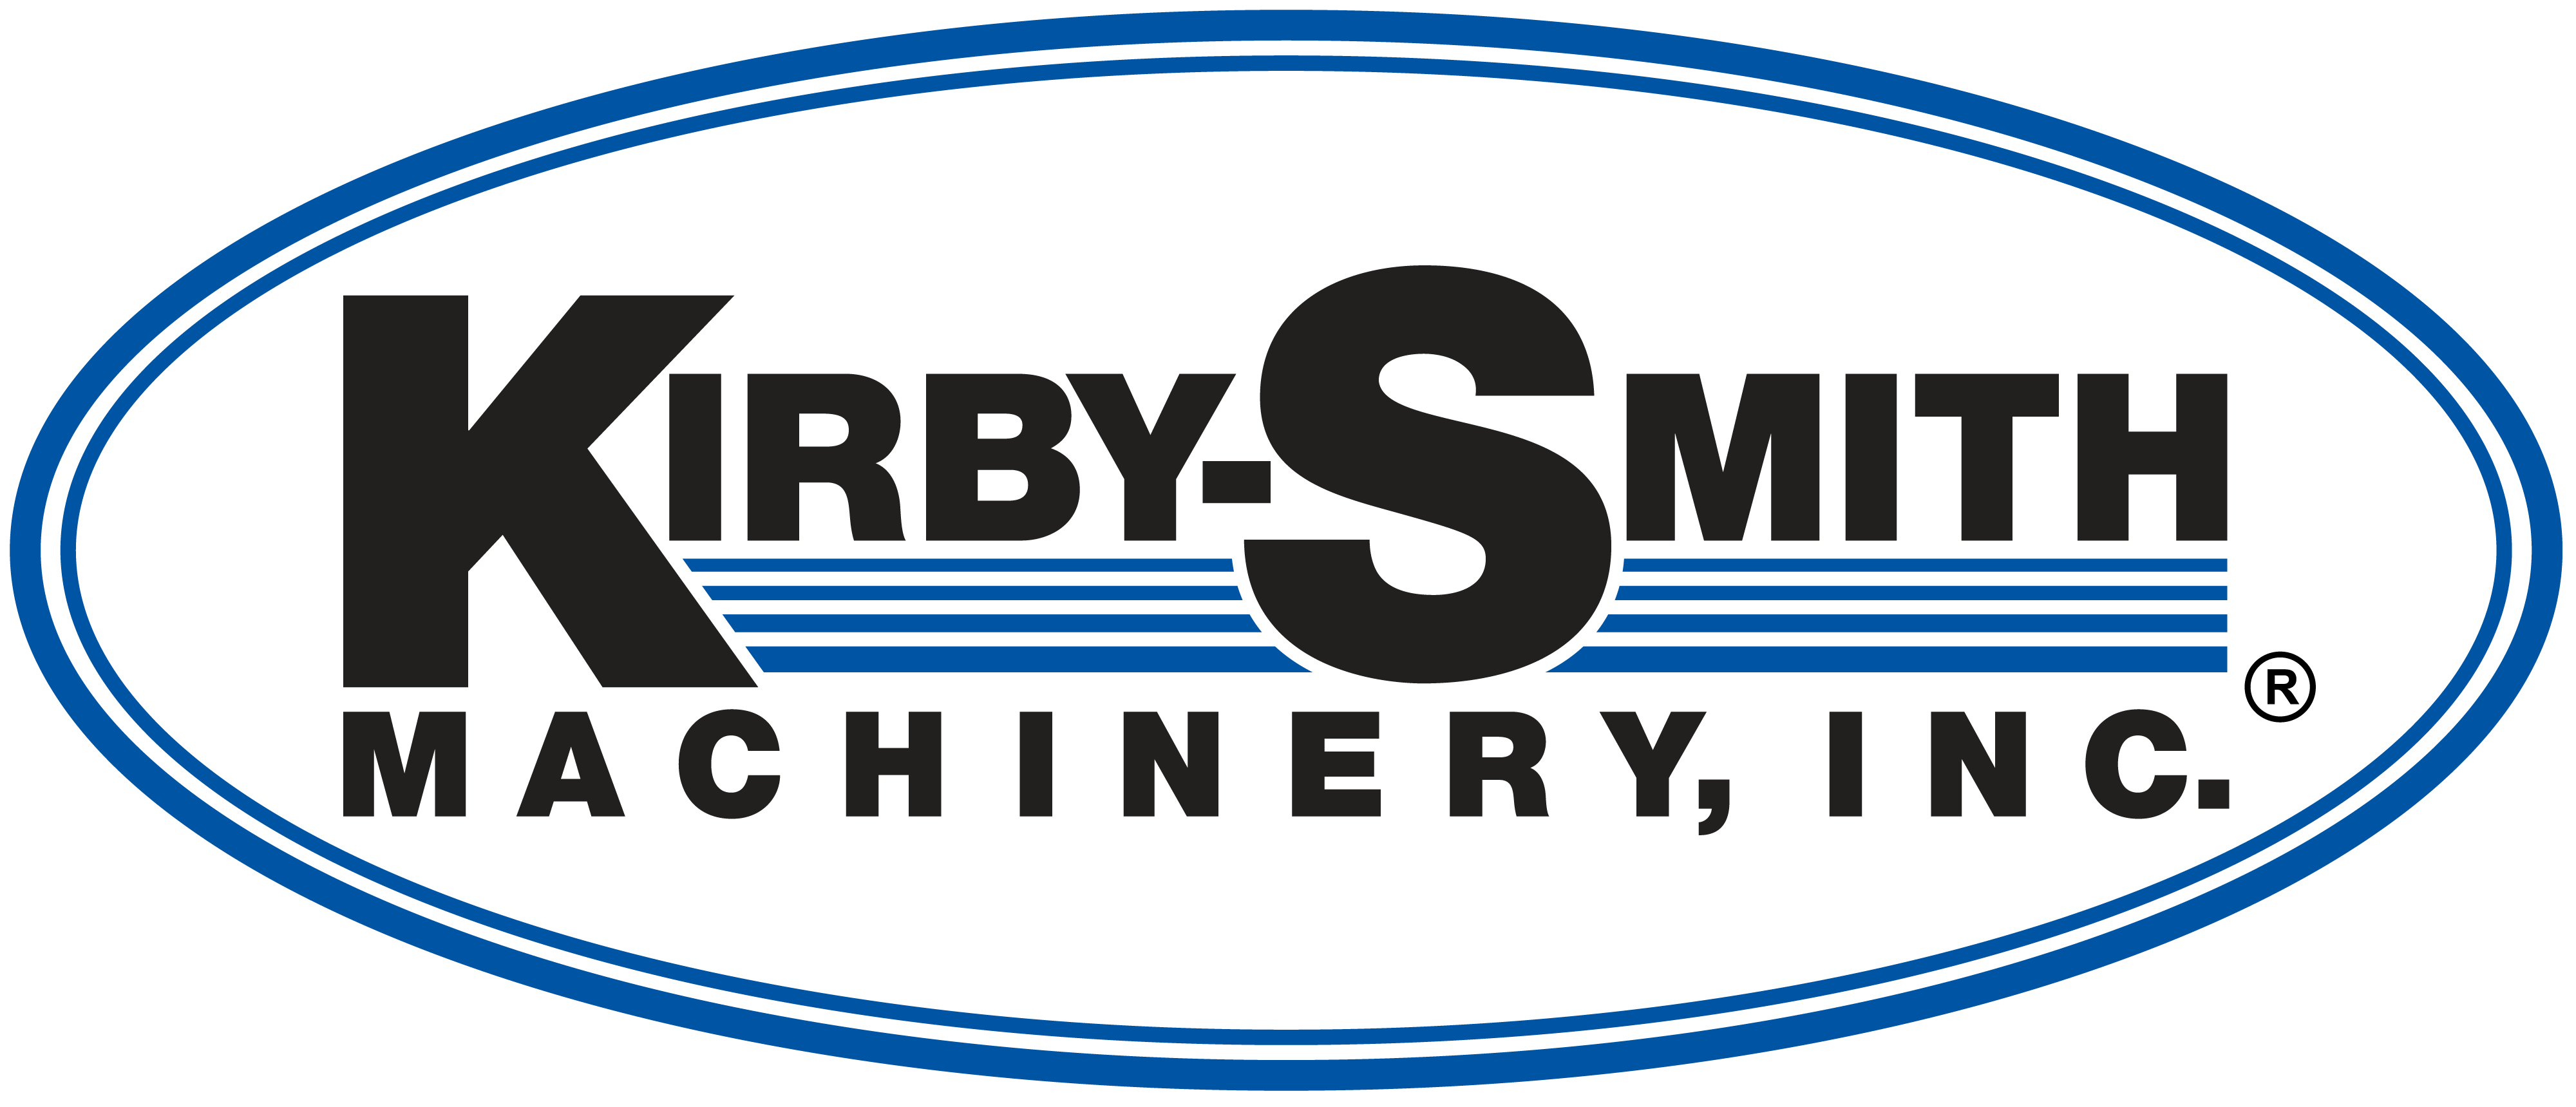 Kirby Smith Machinery